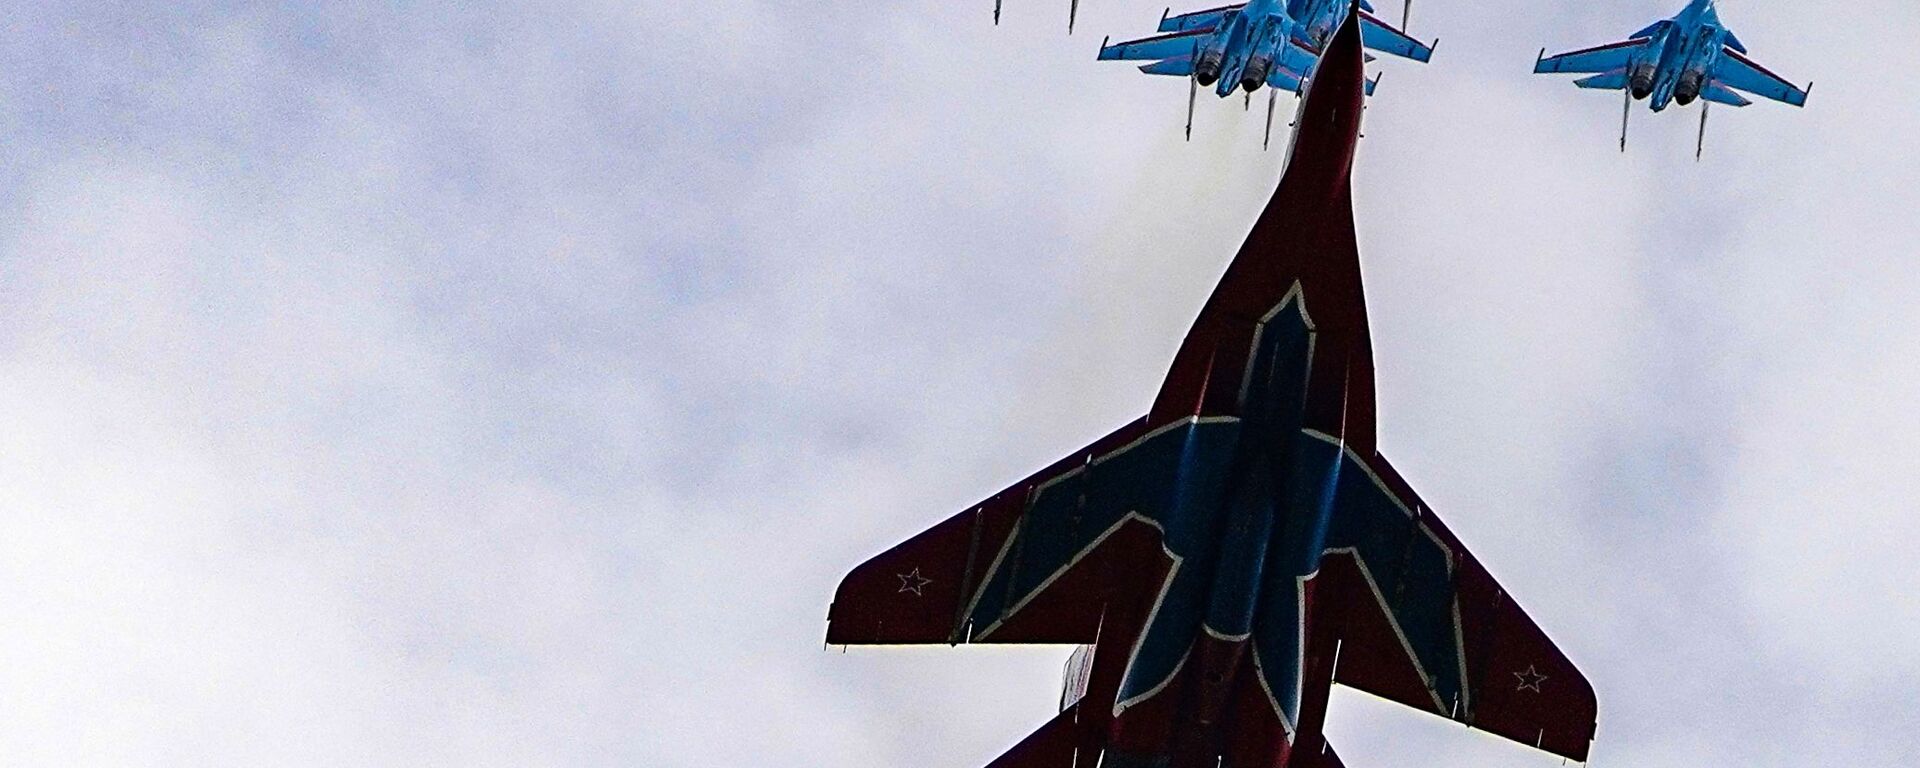 Истребители МиГ-29 и Су-30СМ пилотажных групп Русские витязи и Стрижи во время репетиции воздушной части парада Победы - Sputnik Абхазия, 1920, 12.12.2022